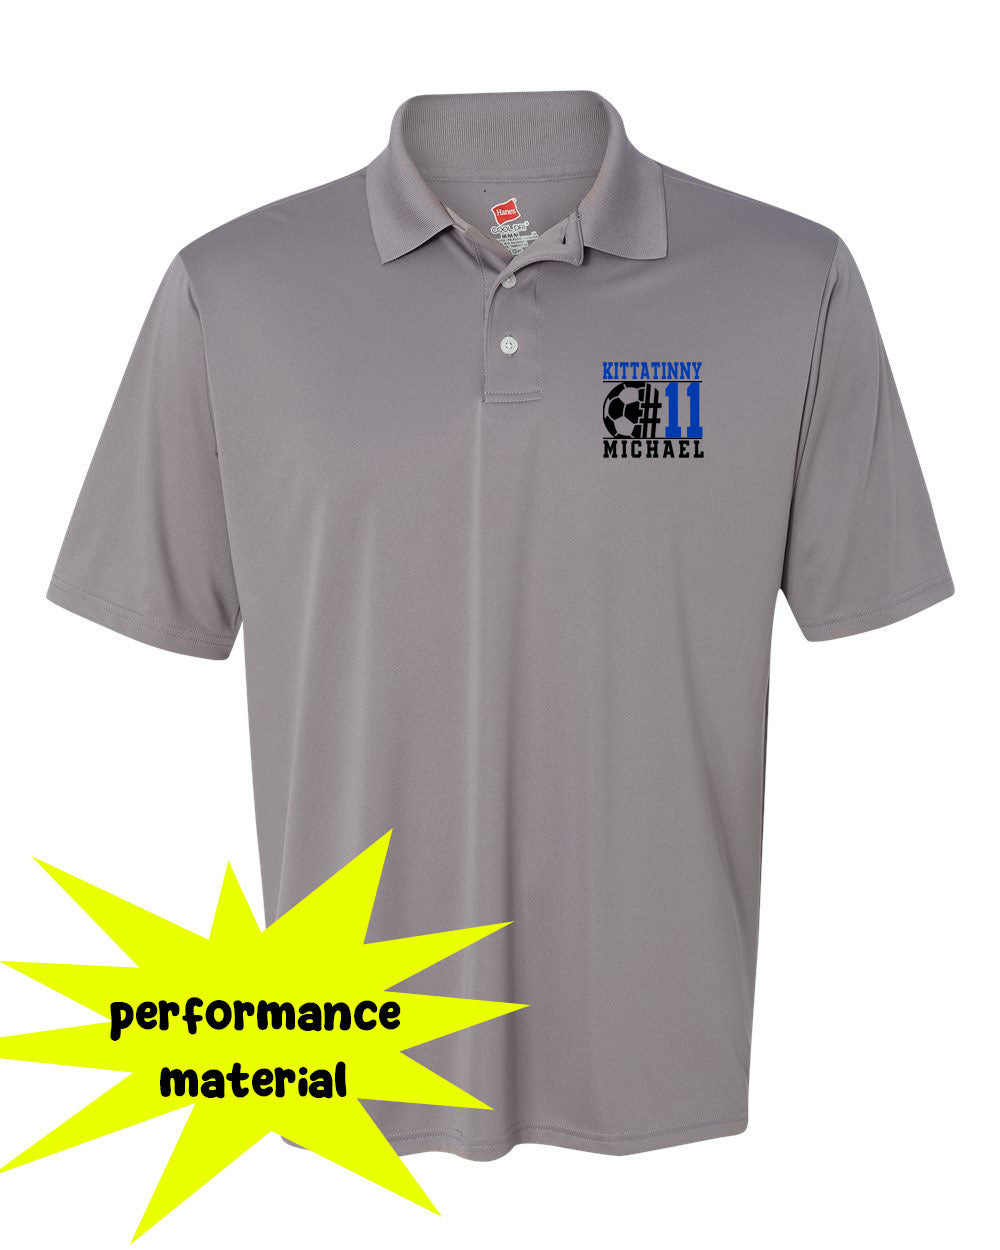 Kittatinny Soccer Design 5 Performance Material Polo T-Shirt